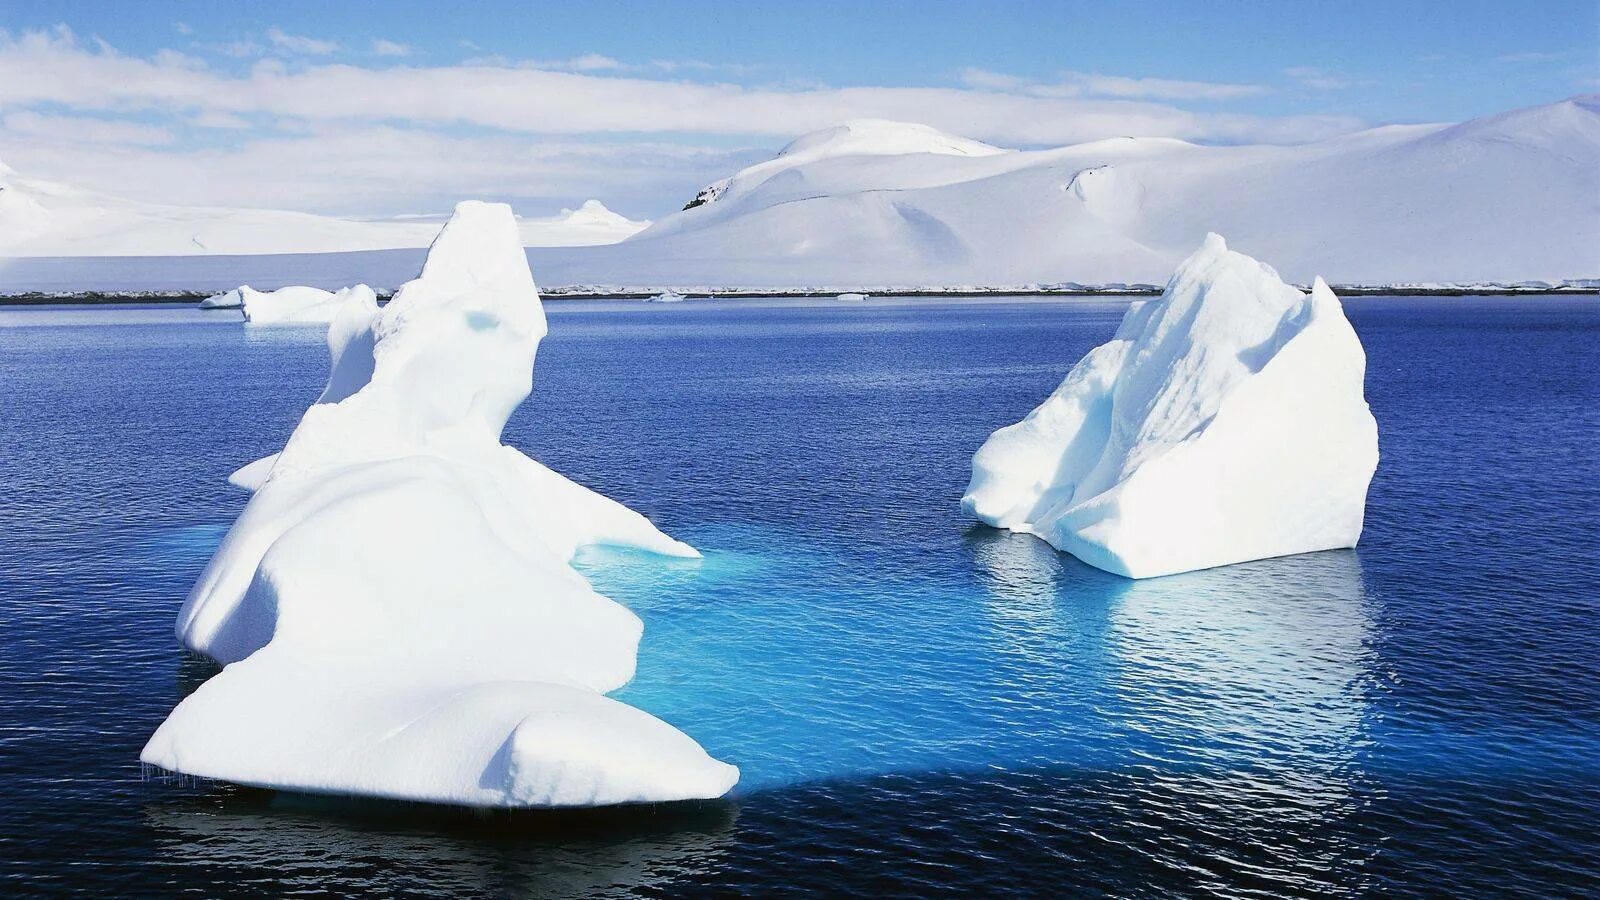 Южный океан г. Море Уэдделла Южный океан. Море Уэдделла в Антарктиде. Южный Ледовитый океан. Море Уэдделла айсберги.